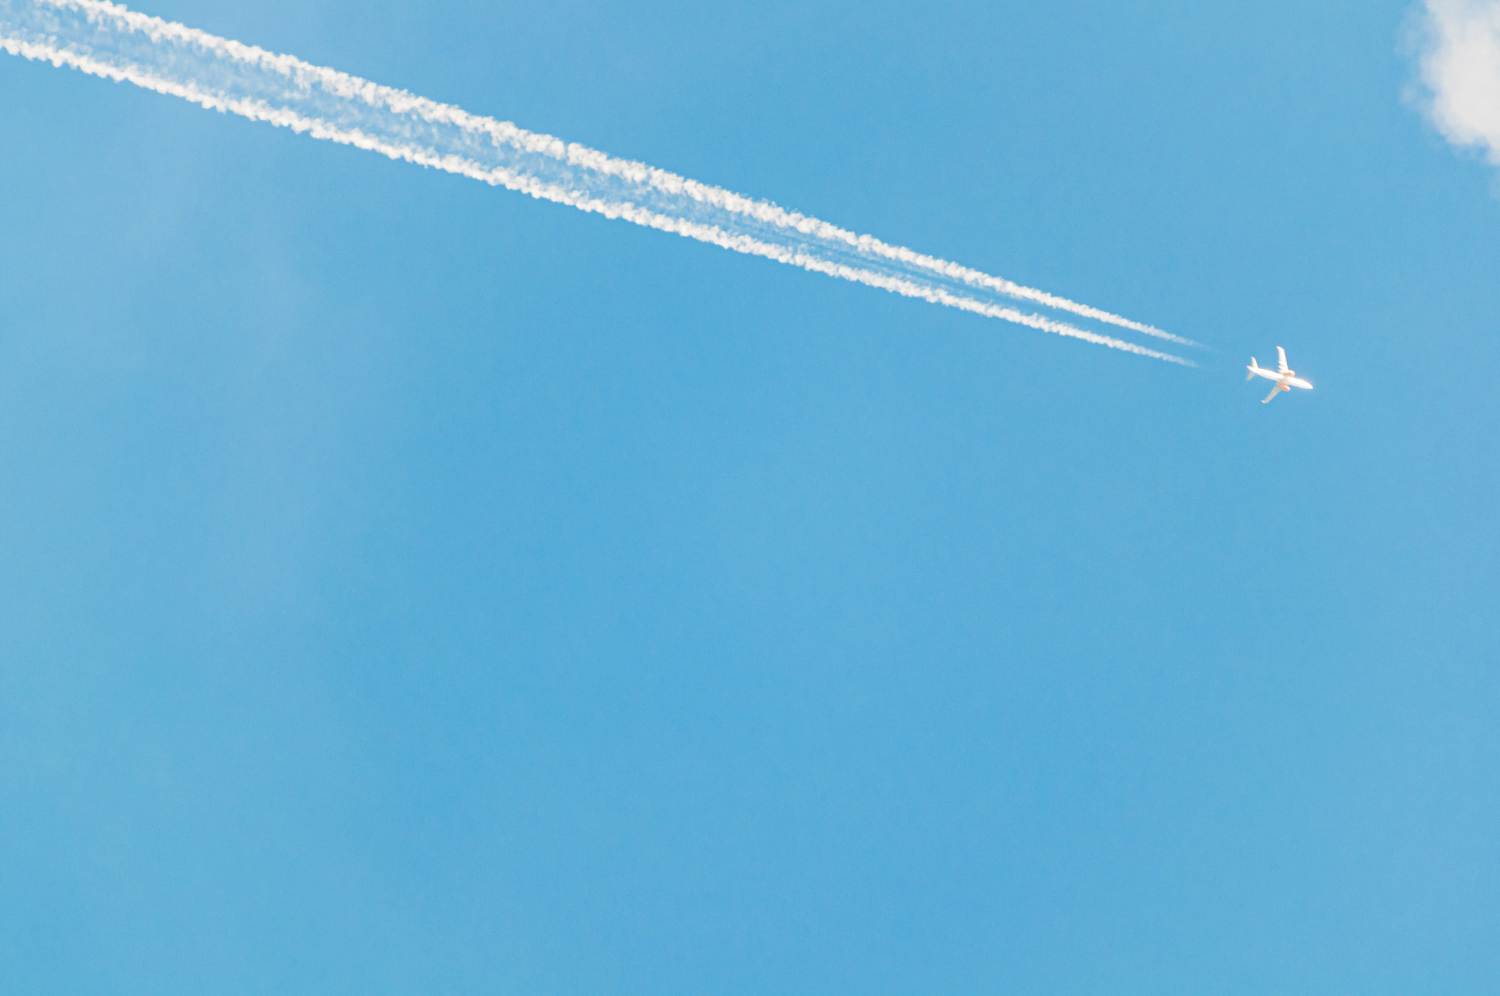 Luftfahrtindustrie verursacht 2-3% aller CO2-Emissionen weltweit